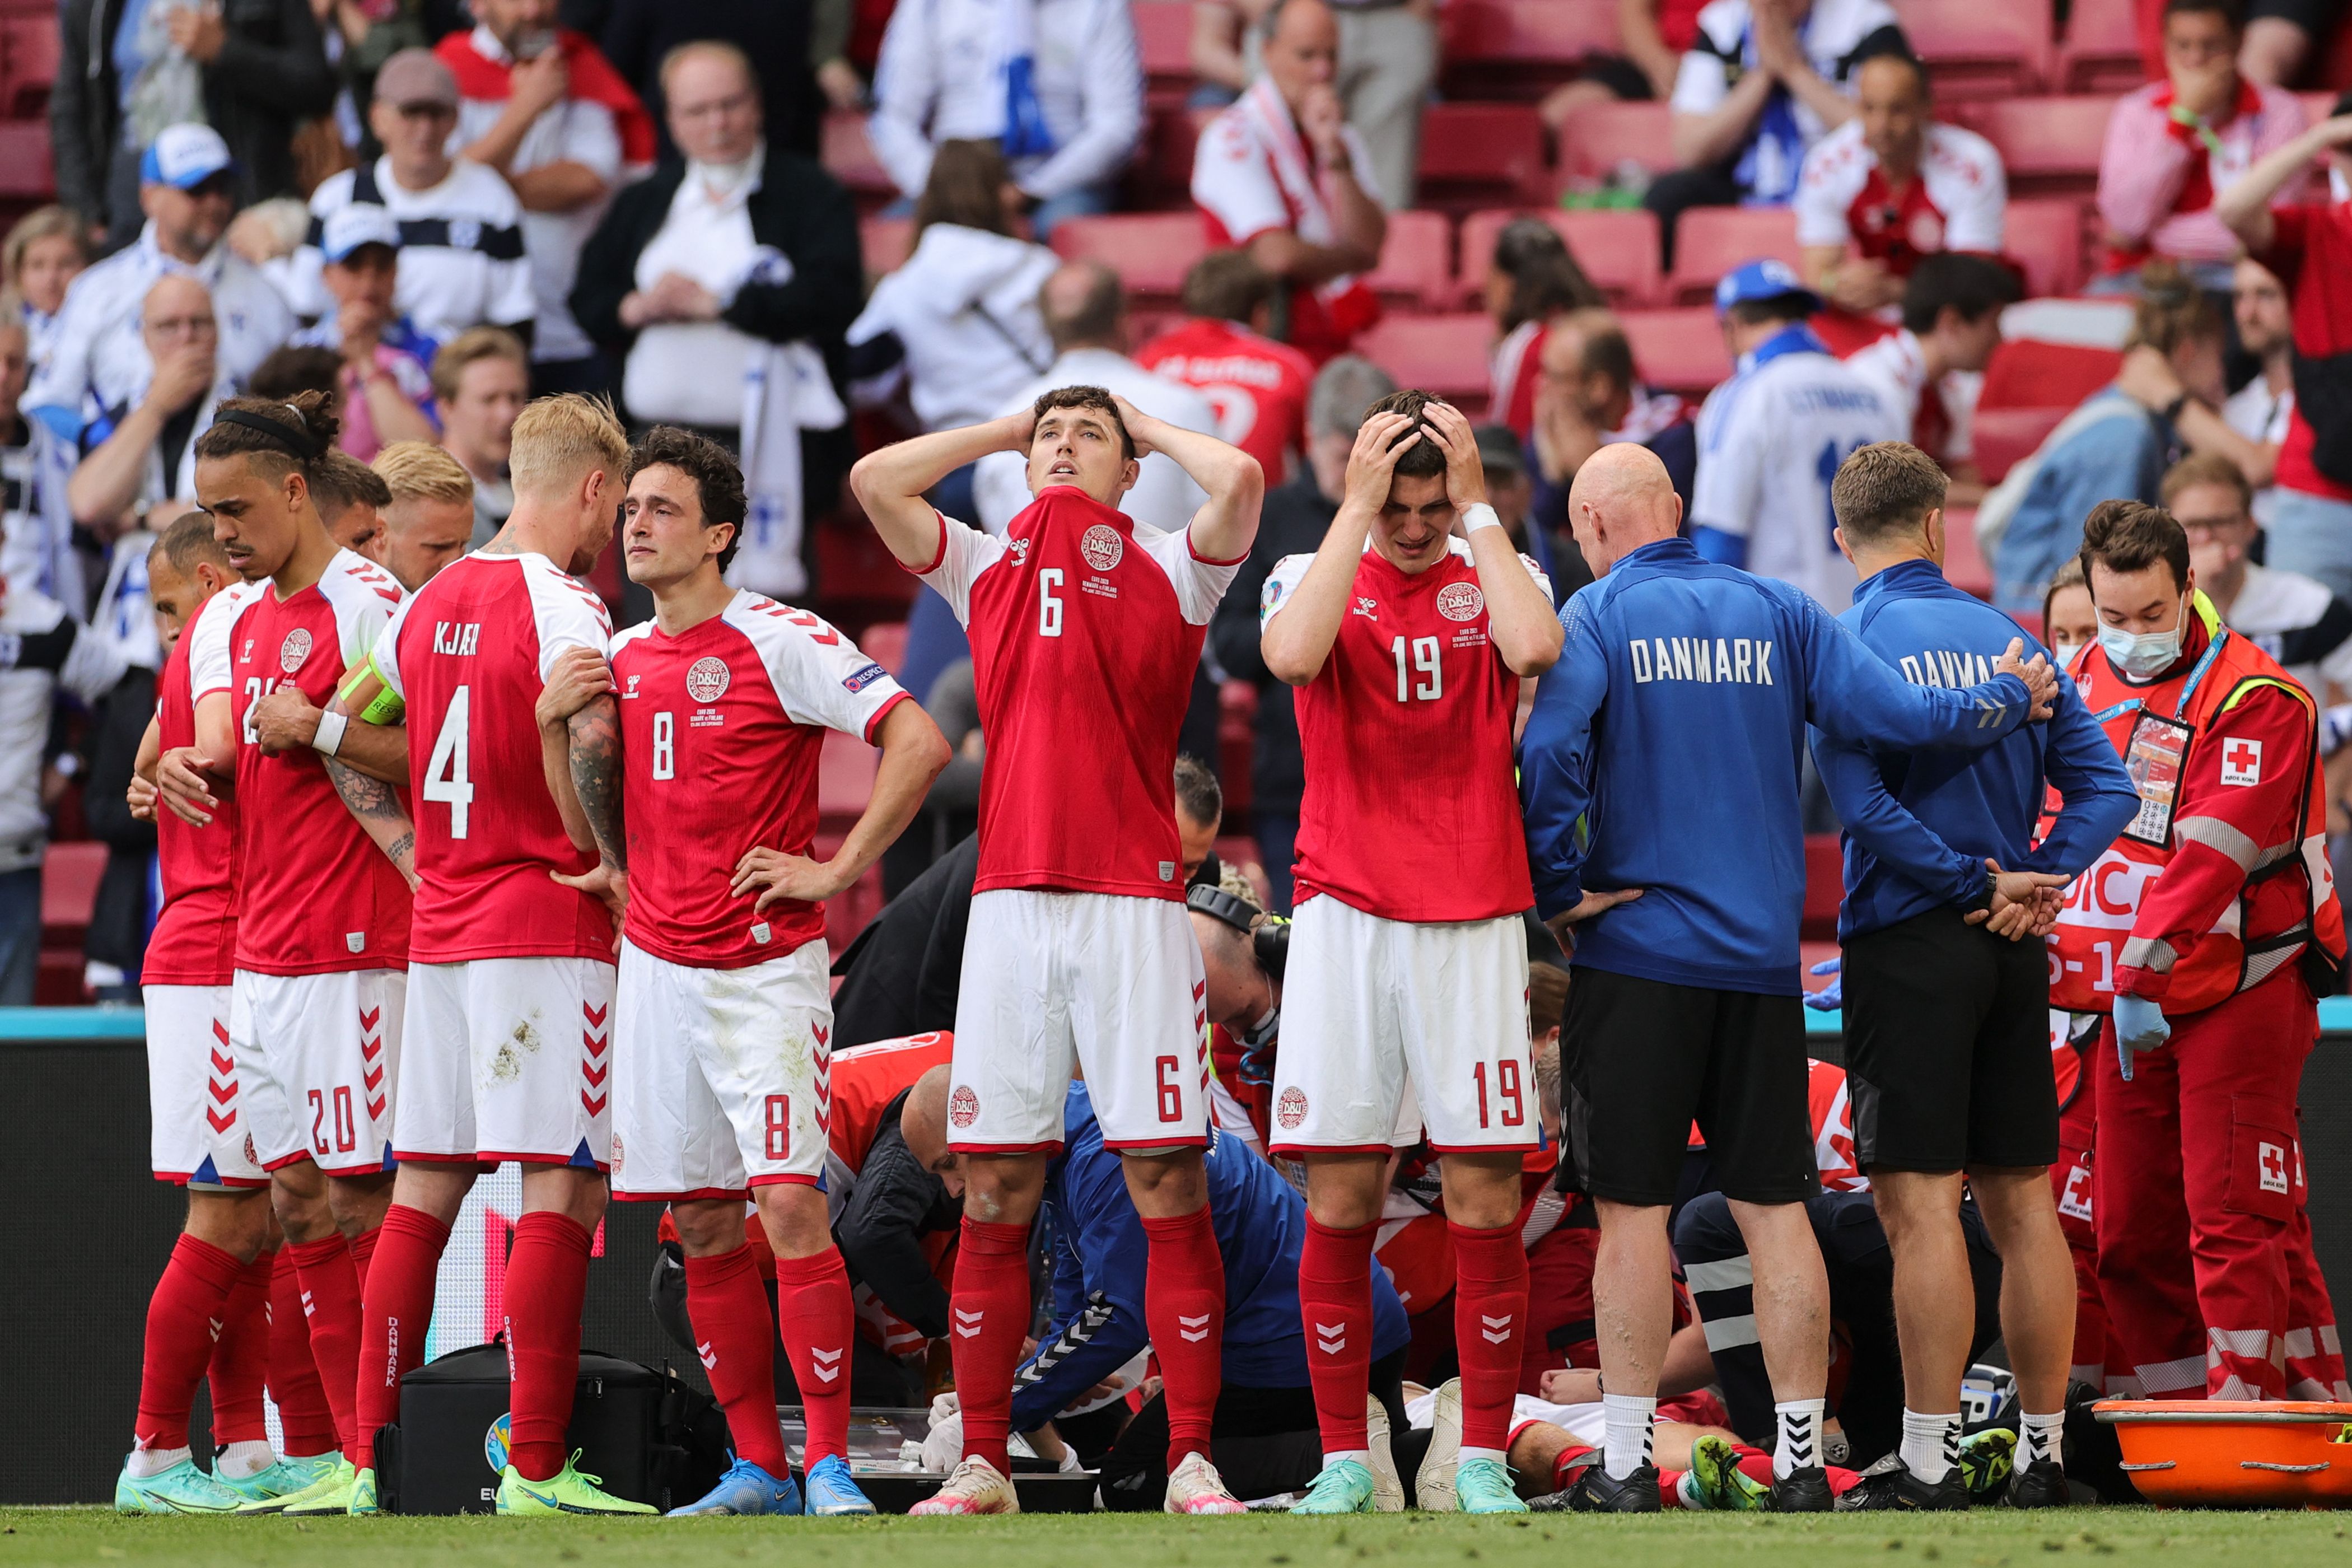 丹麦中场埃里克森在球场倒下后，医护人员紧急抢救，队友们开始哭泣，但仍心连心围起来，留给埃里克森隐私，也集气为他祈福。（法新社照片）